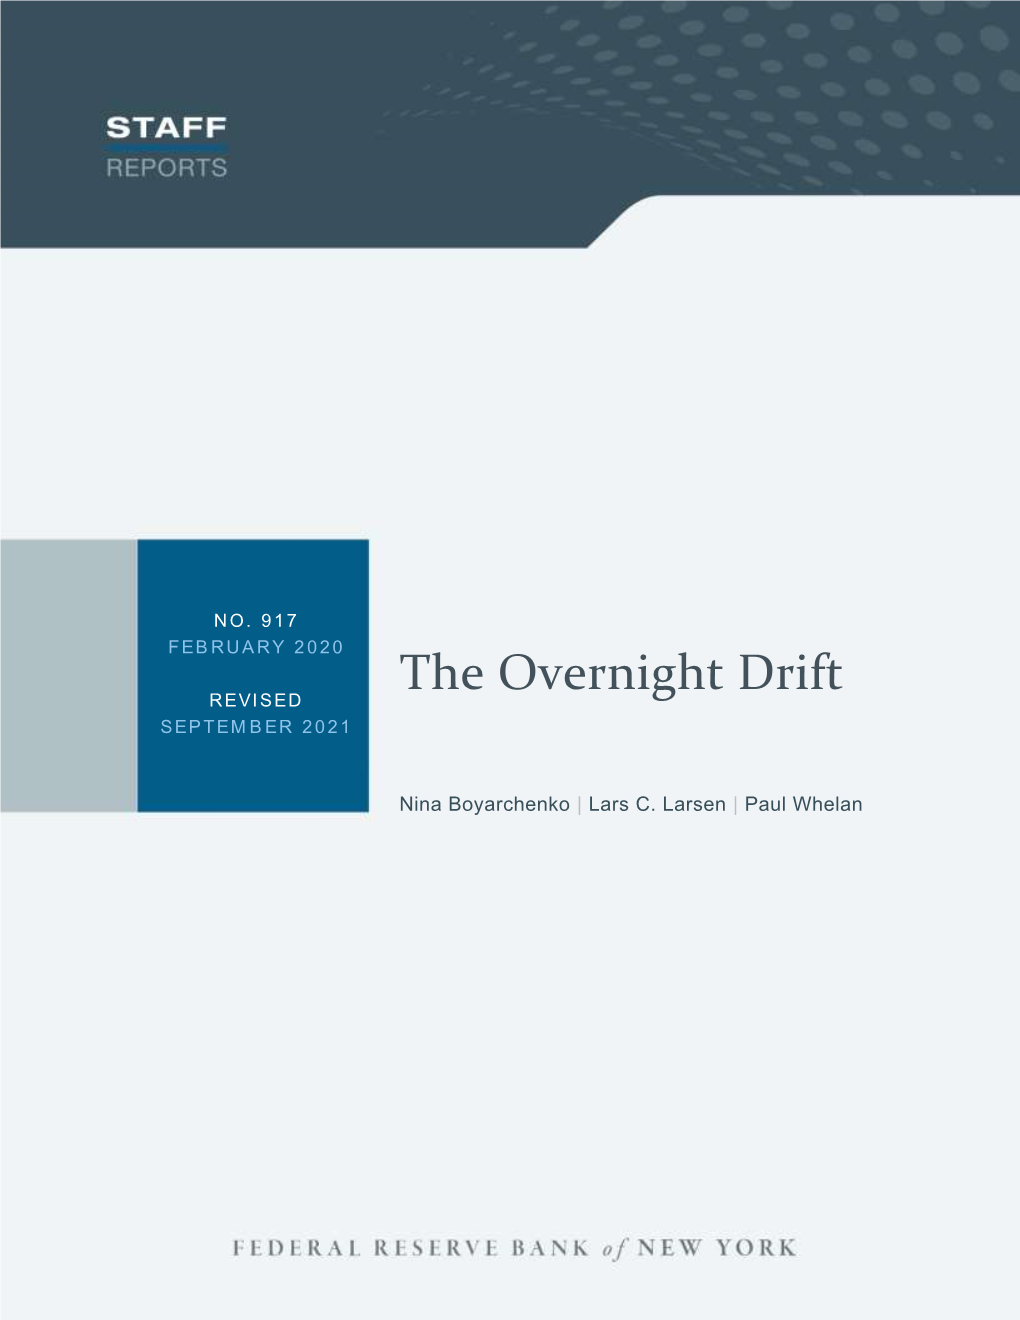 The Overnight Drift REVISED SEPTEMBER 2021